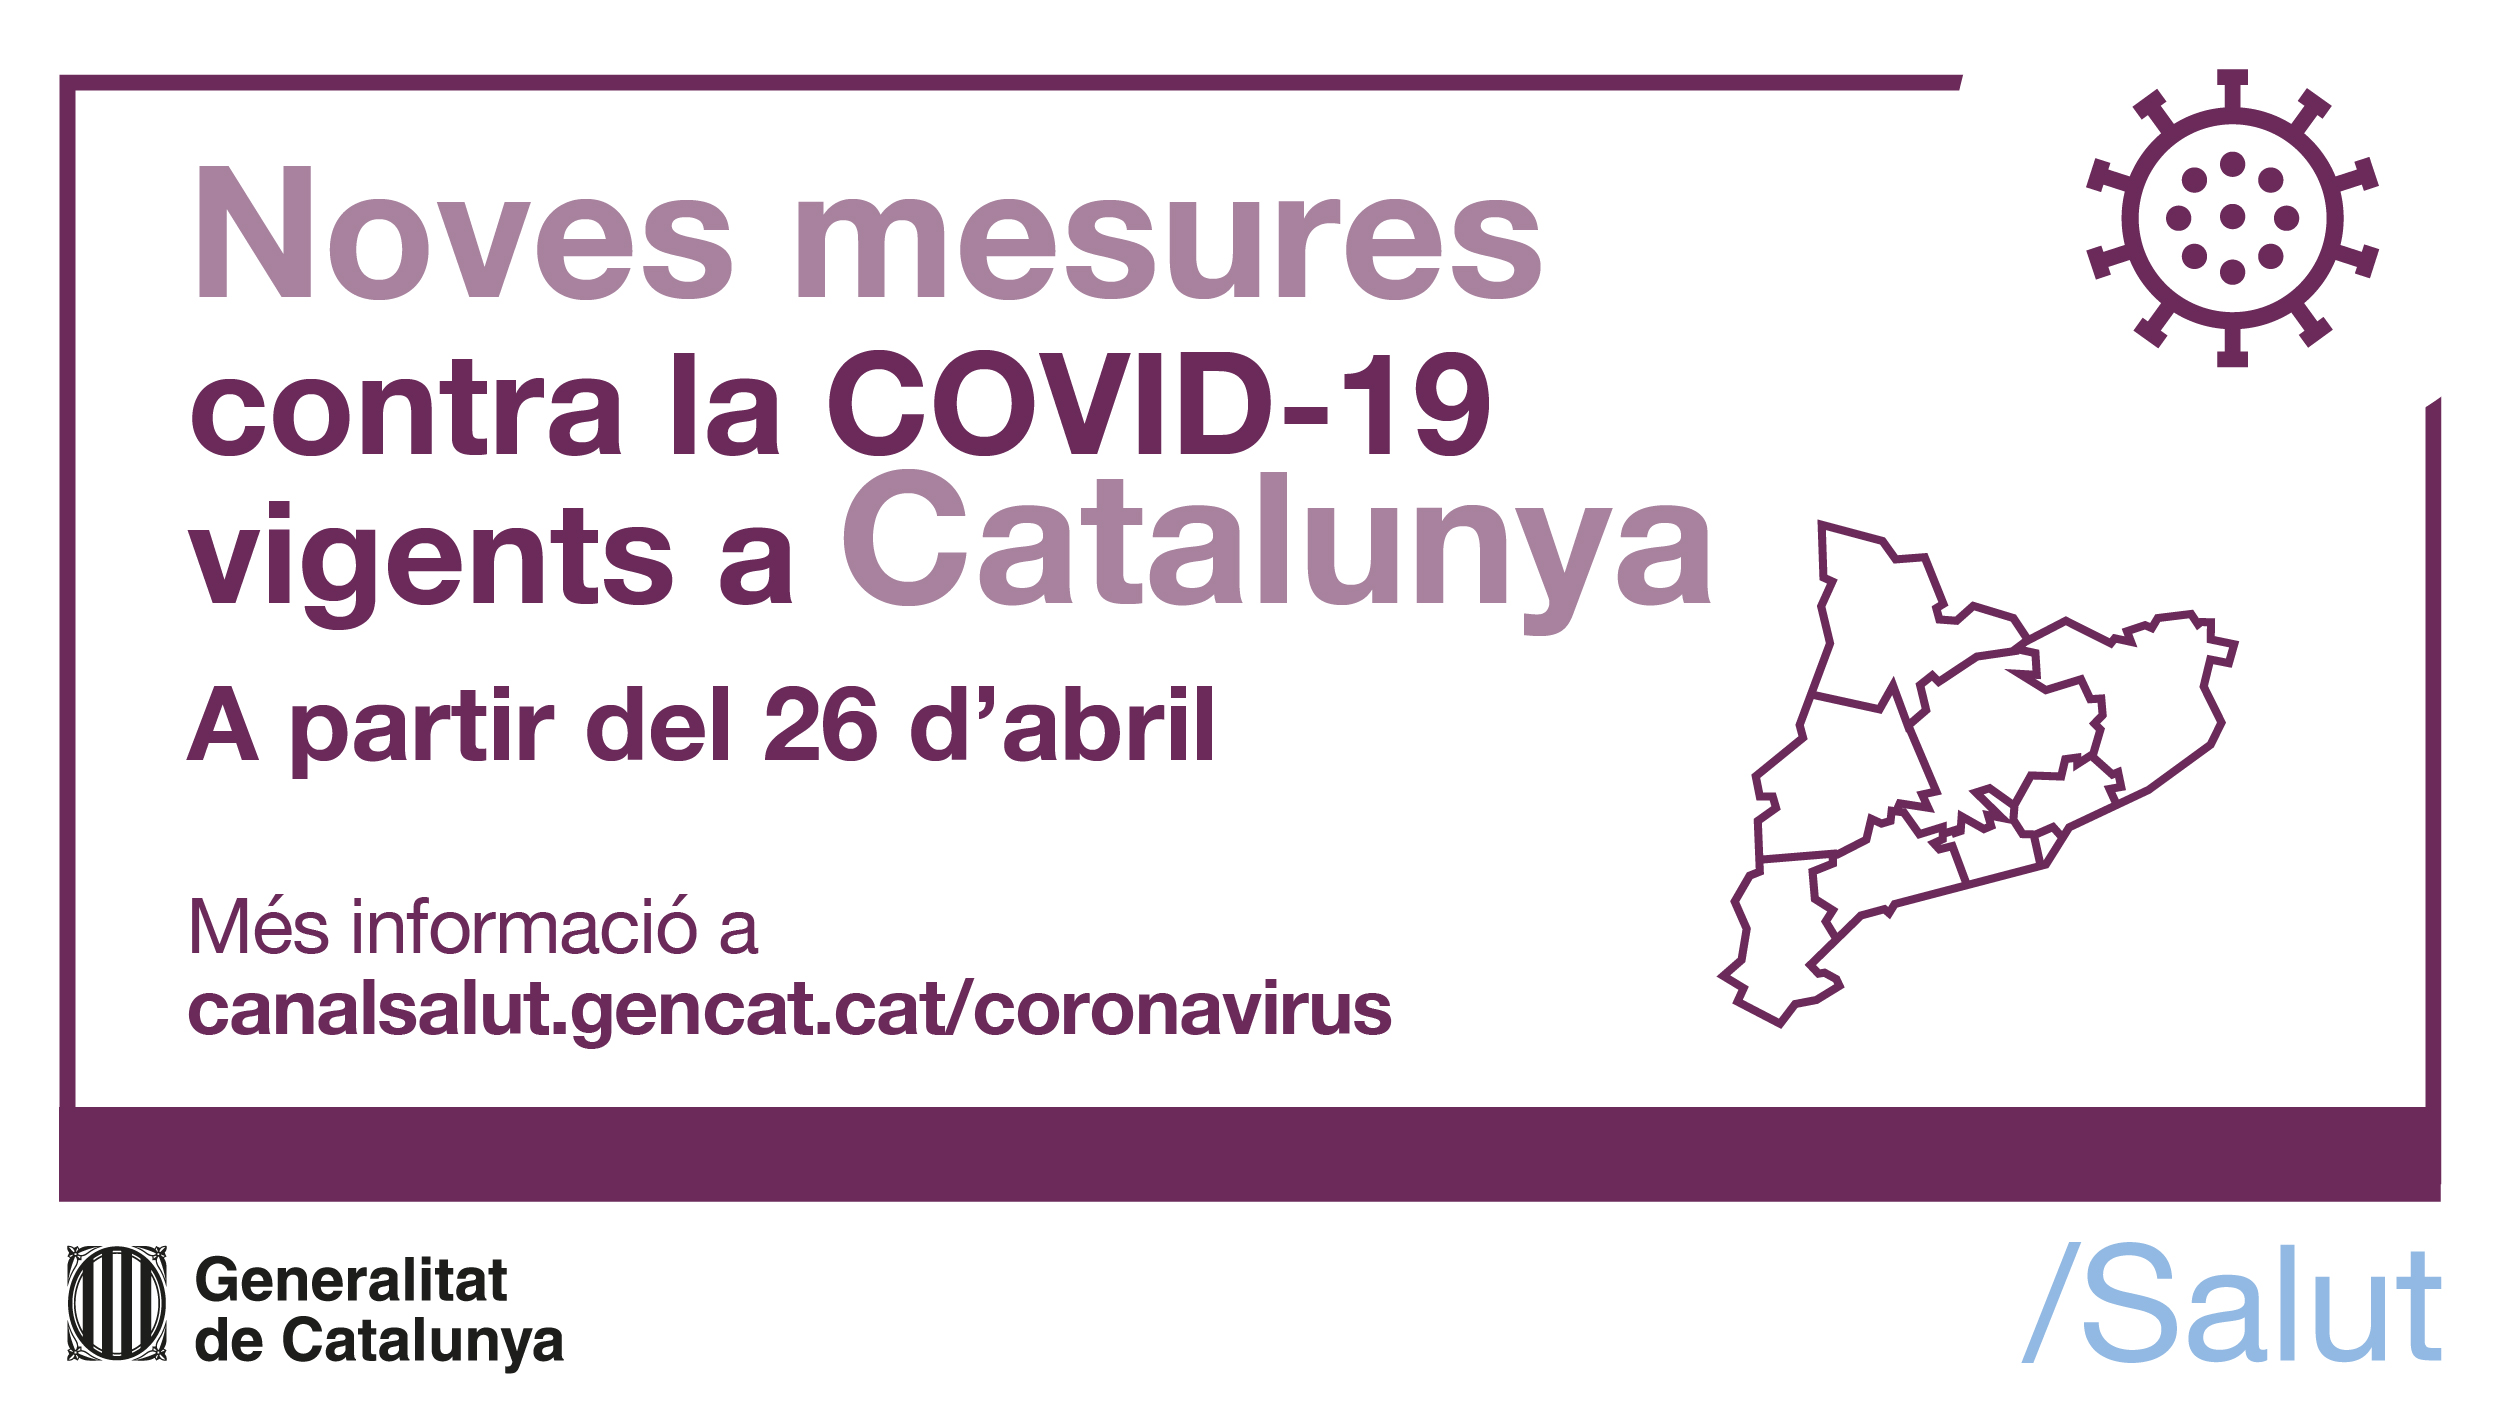 Noves mesures contra la COVID-19 a partir del 26 d'abril.